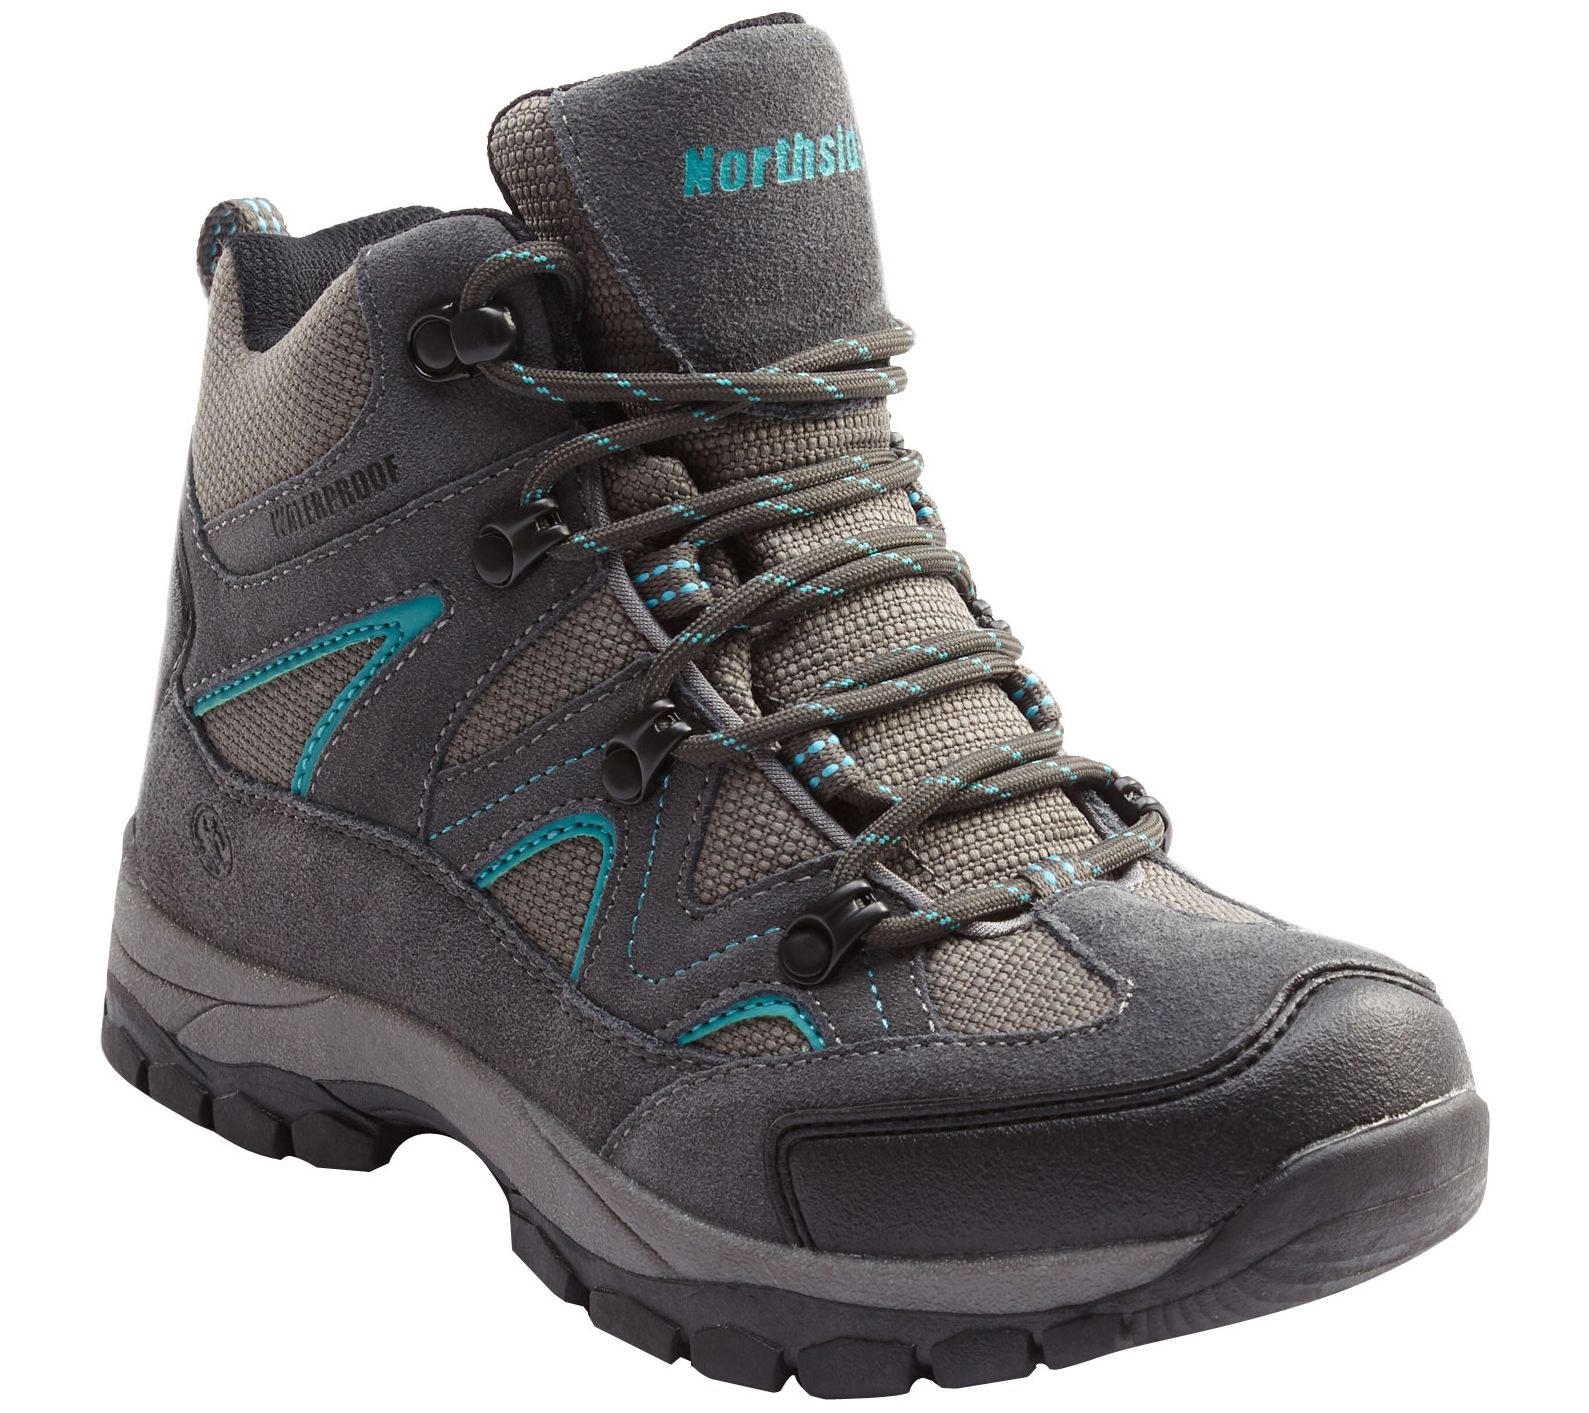 Northside Hiking Boots - Snohomish - QVC.com